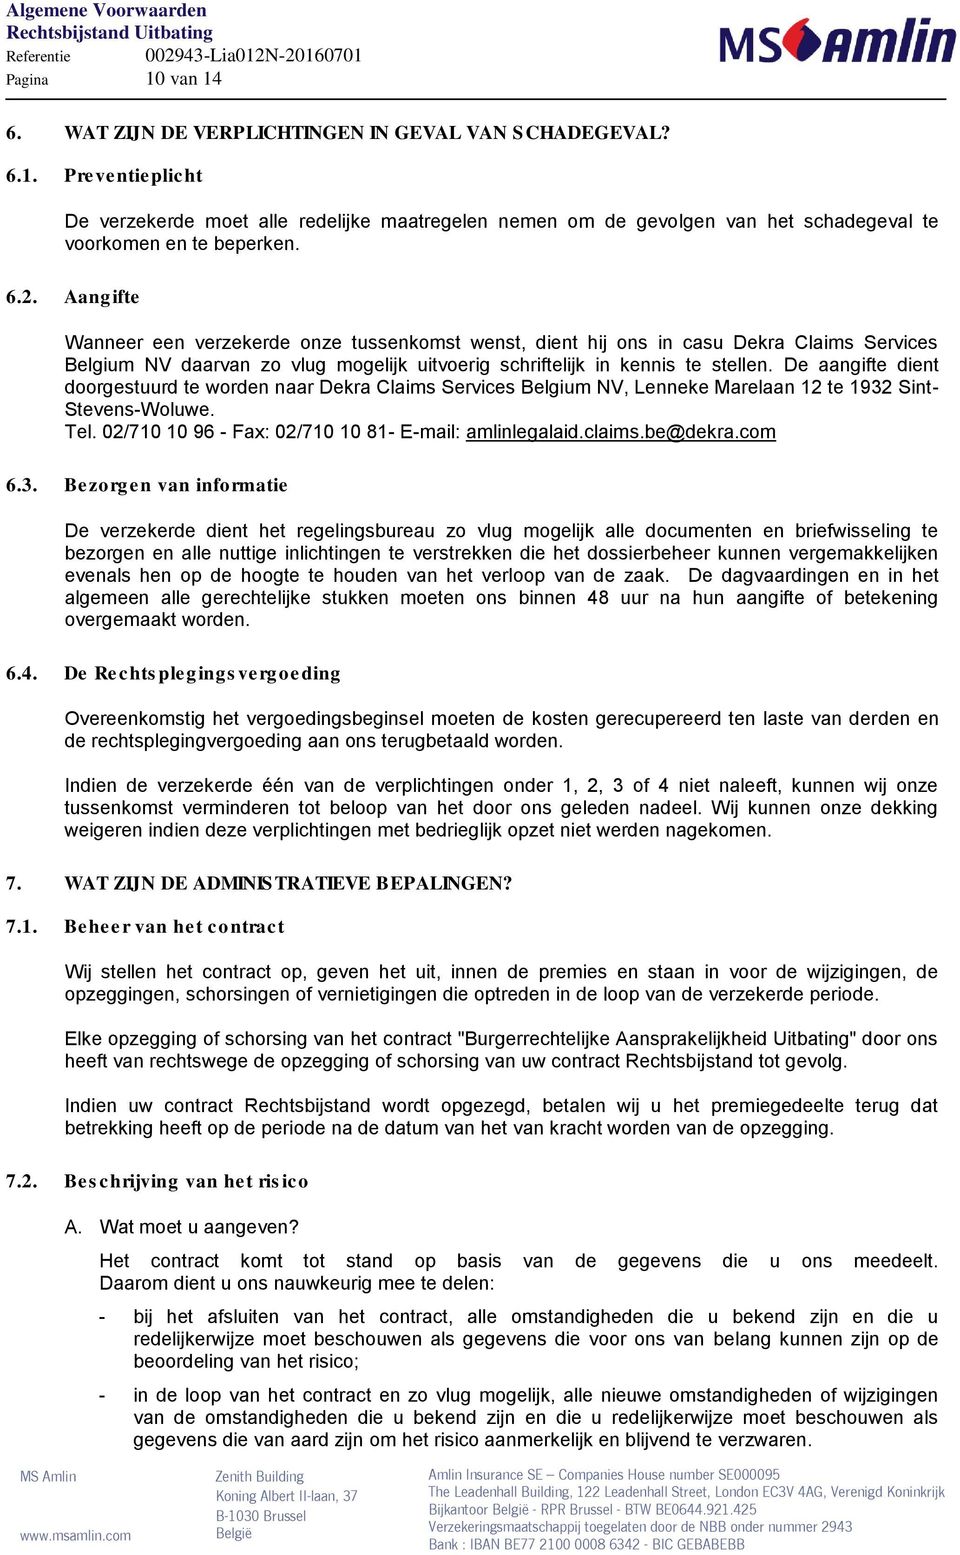 De aangifte dient doorgestuurd te worden naar Dekra Claims Services Belgium NV, Lenneke Marelaan 12 te 1932 Sint- Stevens-Woluwe. Tel. 02/710 10 96 - Fax: 02/710 10 81- E-mail: amlinlegalaid.claims.